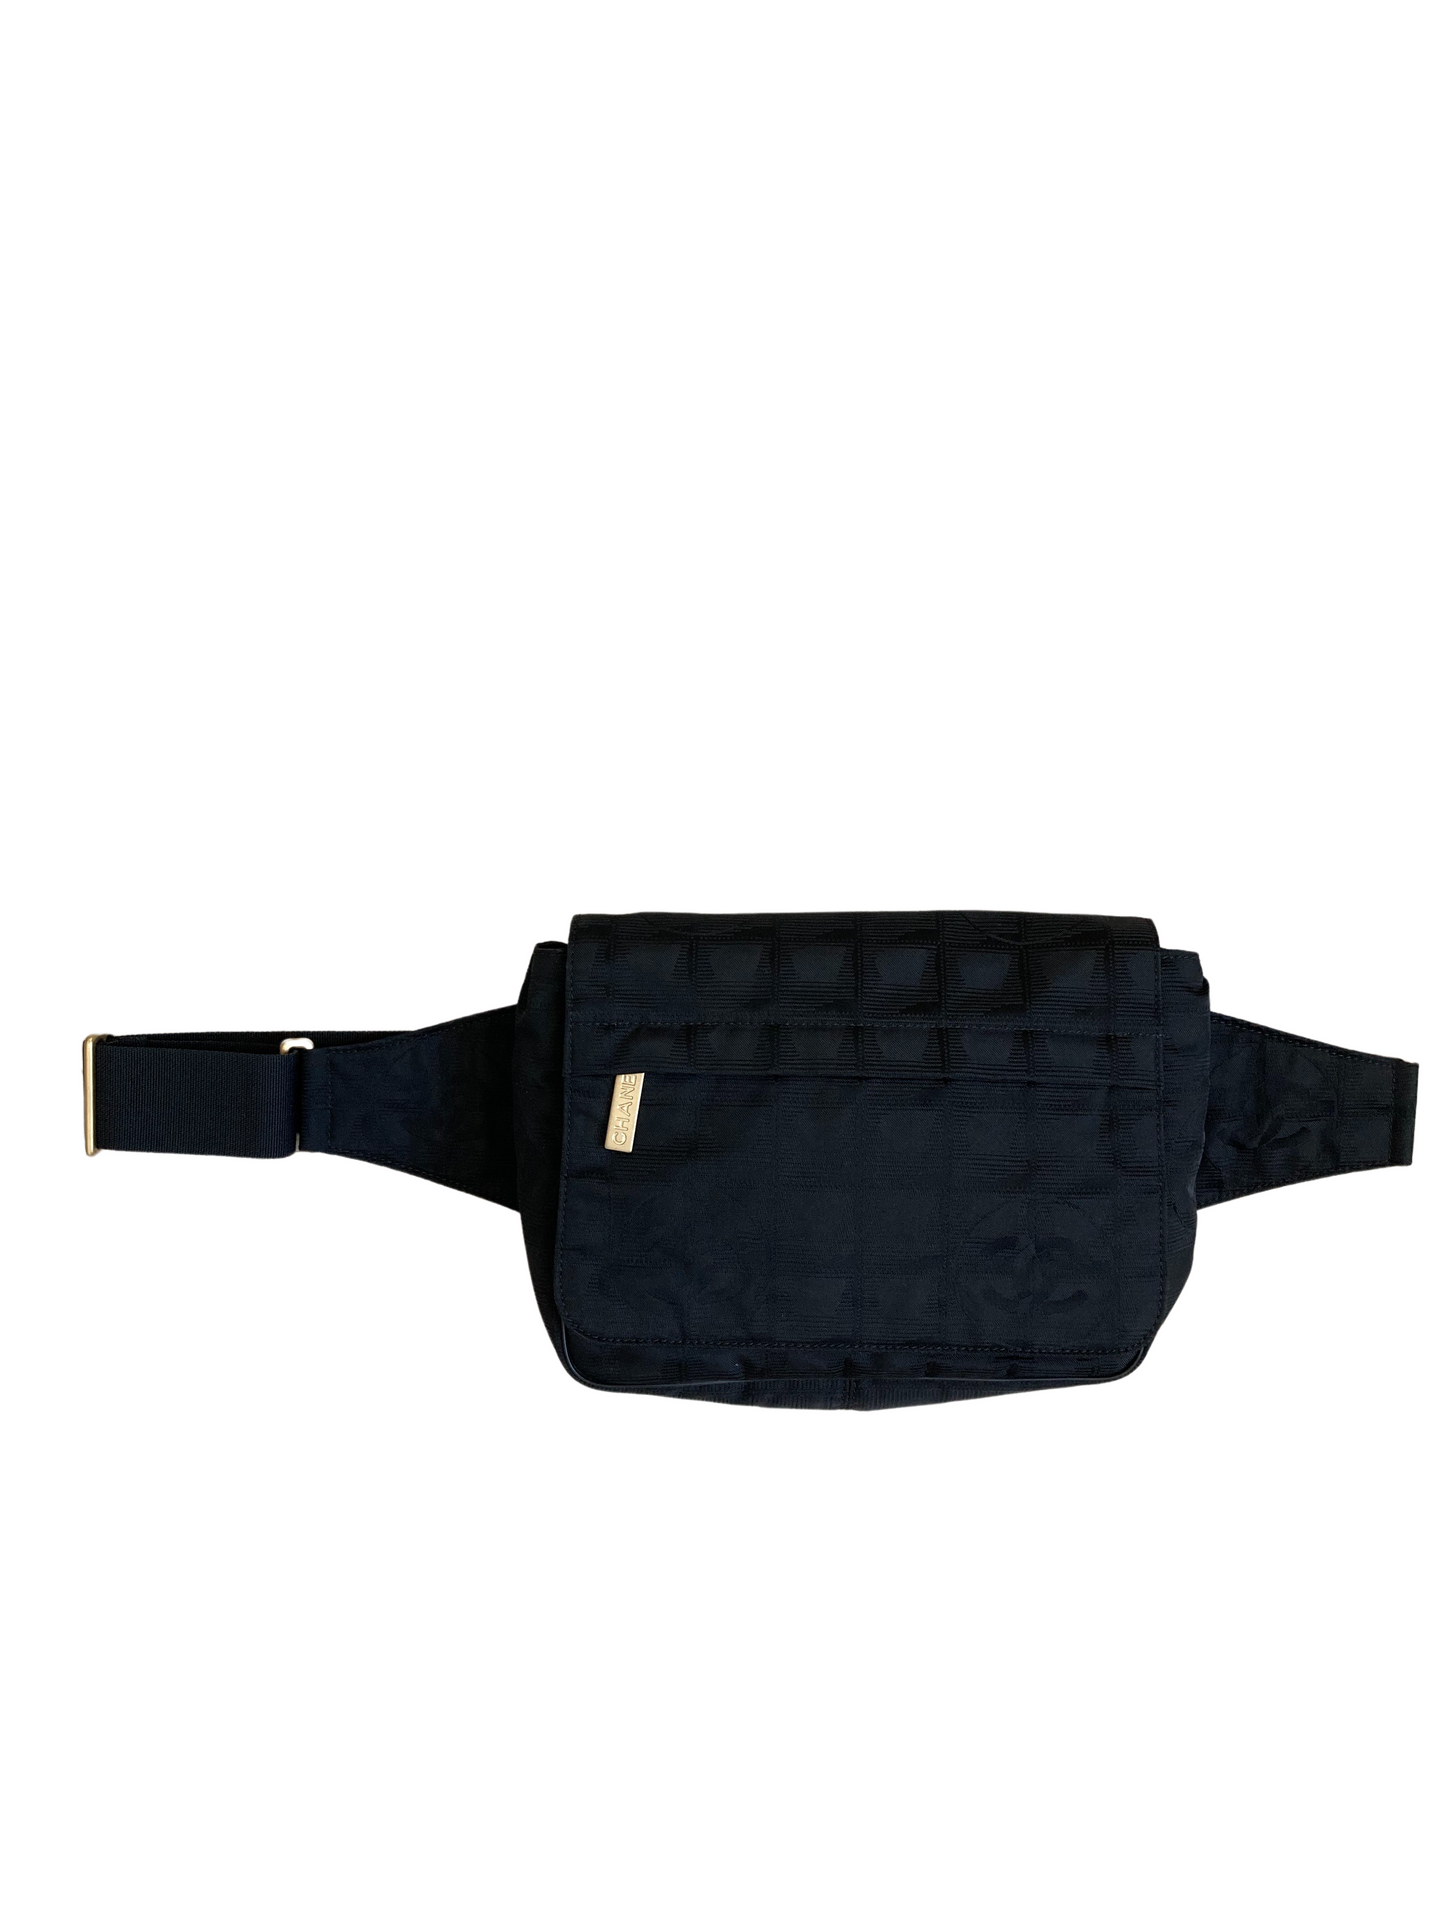 Chanel Travel Line Black Nylon Belt Bag